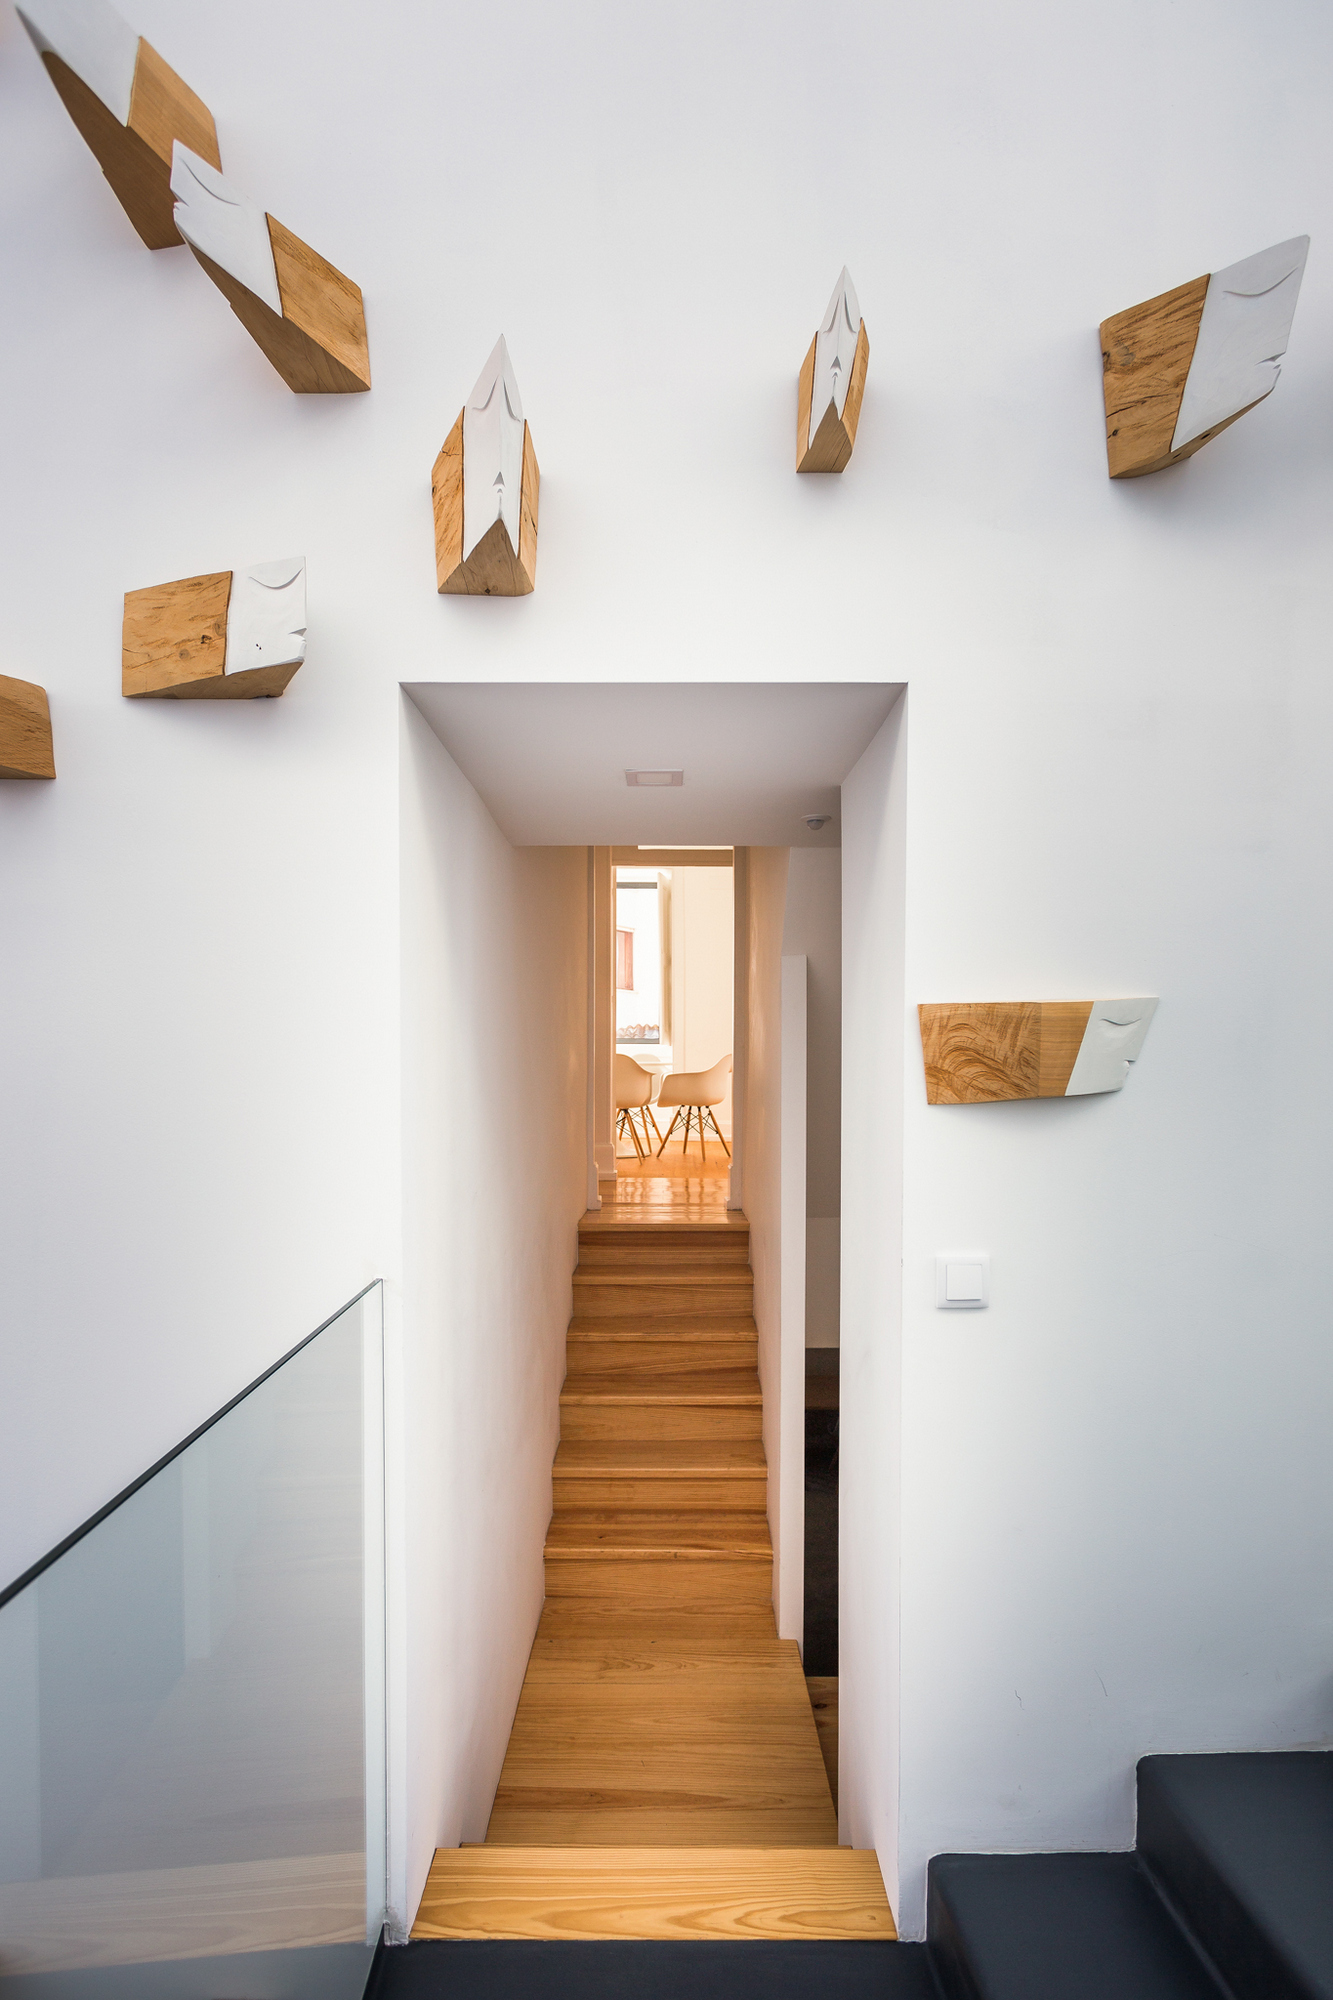 图片[5]|Ubiwhere办公室-Aveiro|ART-Arrakis | 建筑室内设计的创新与灵感